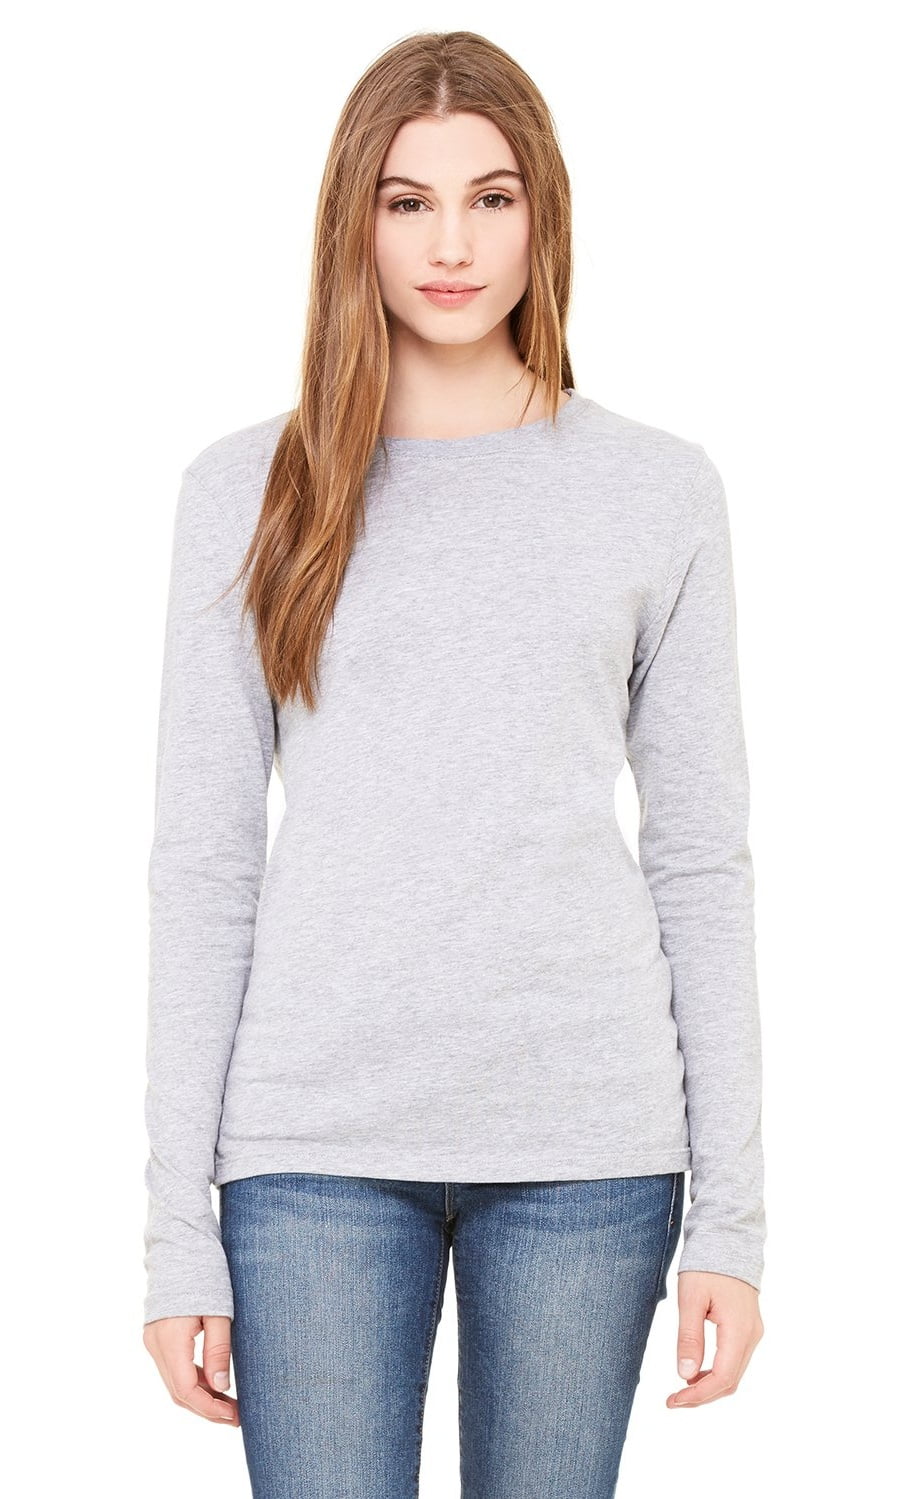 Women's Thick Crewneck Long Sleeve T-Shirt - Walmart.com